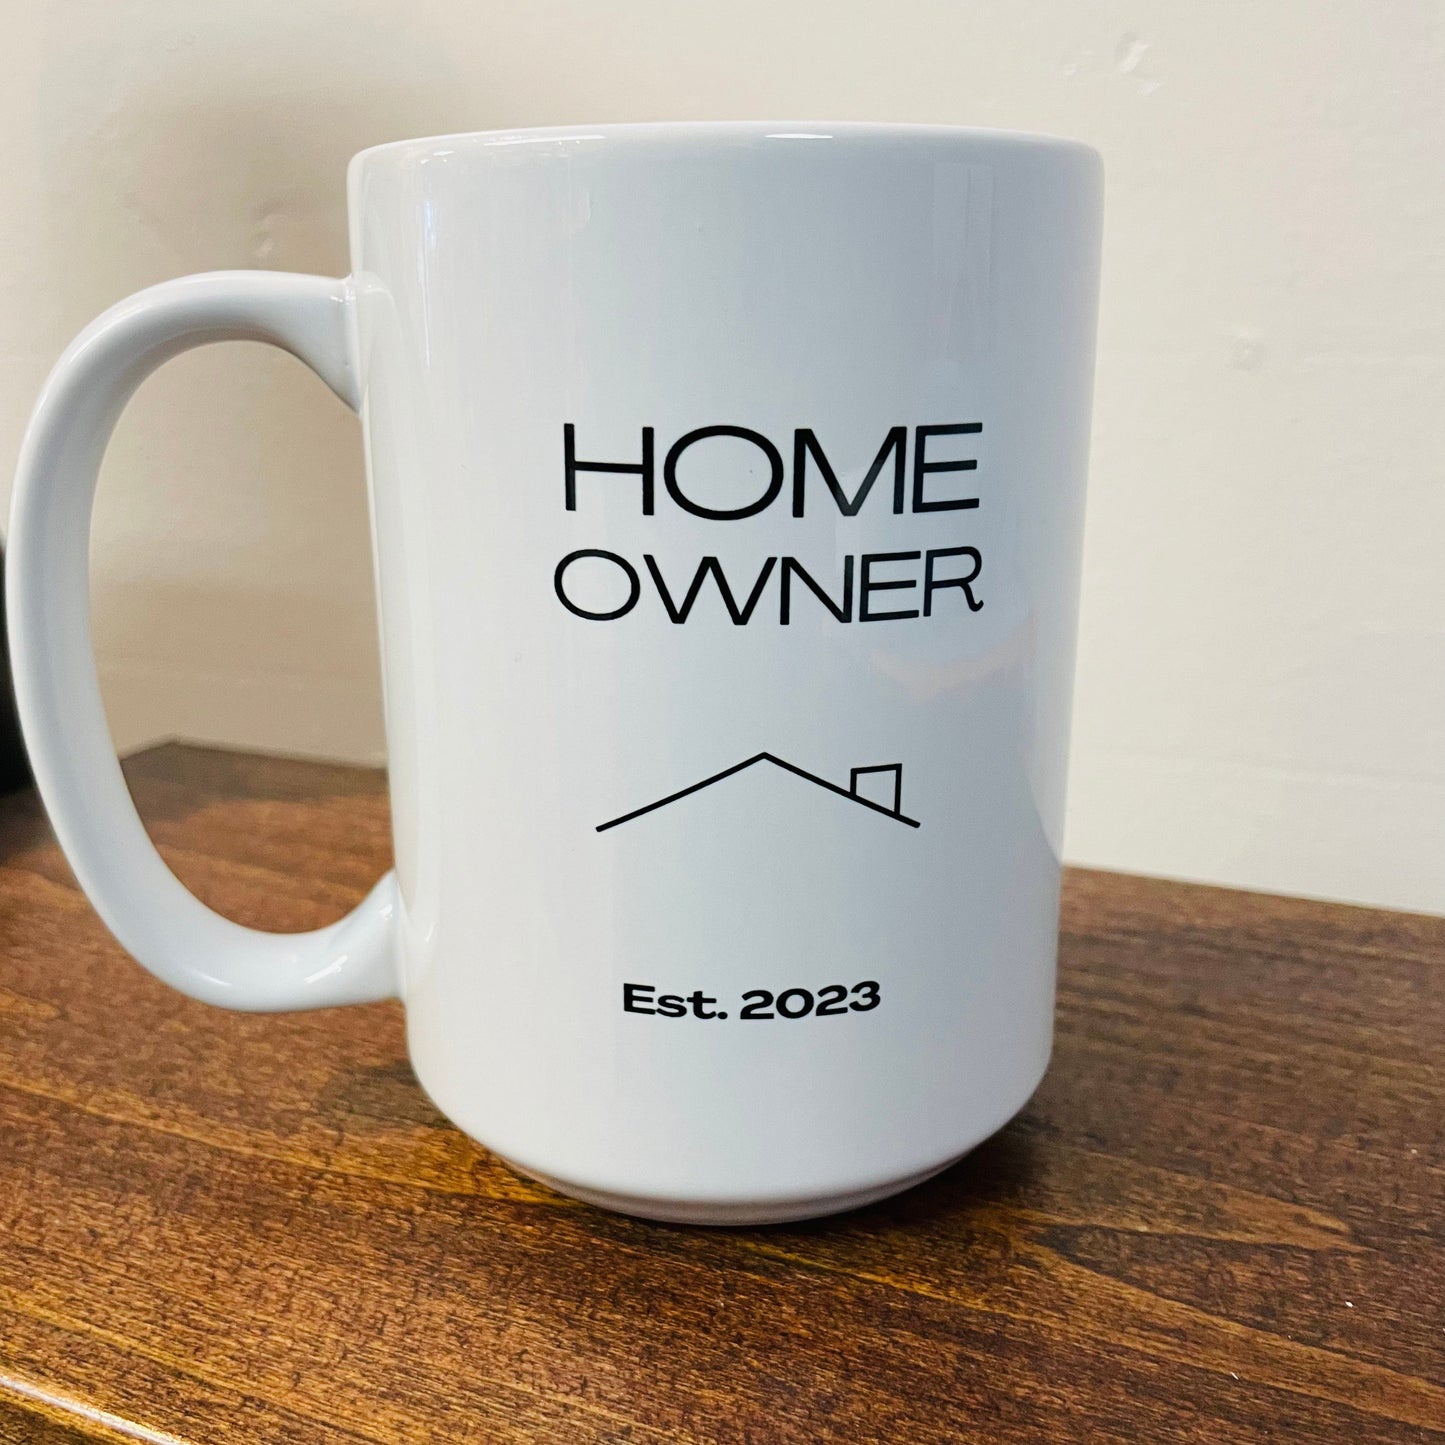 Home Owner Est. 2023 Mug